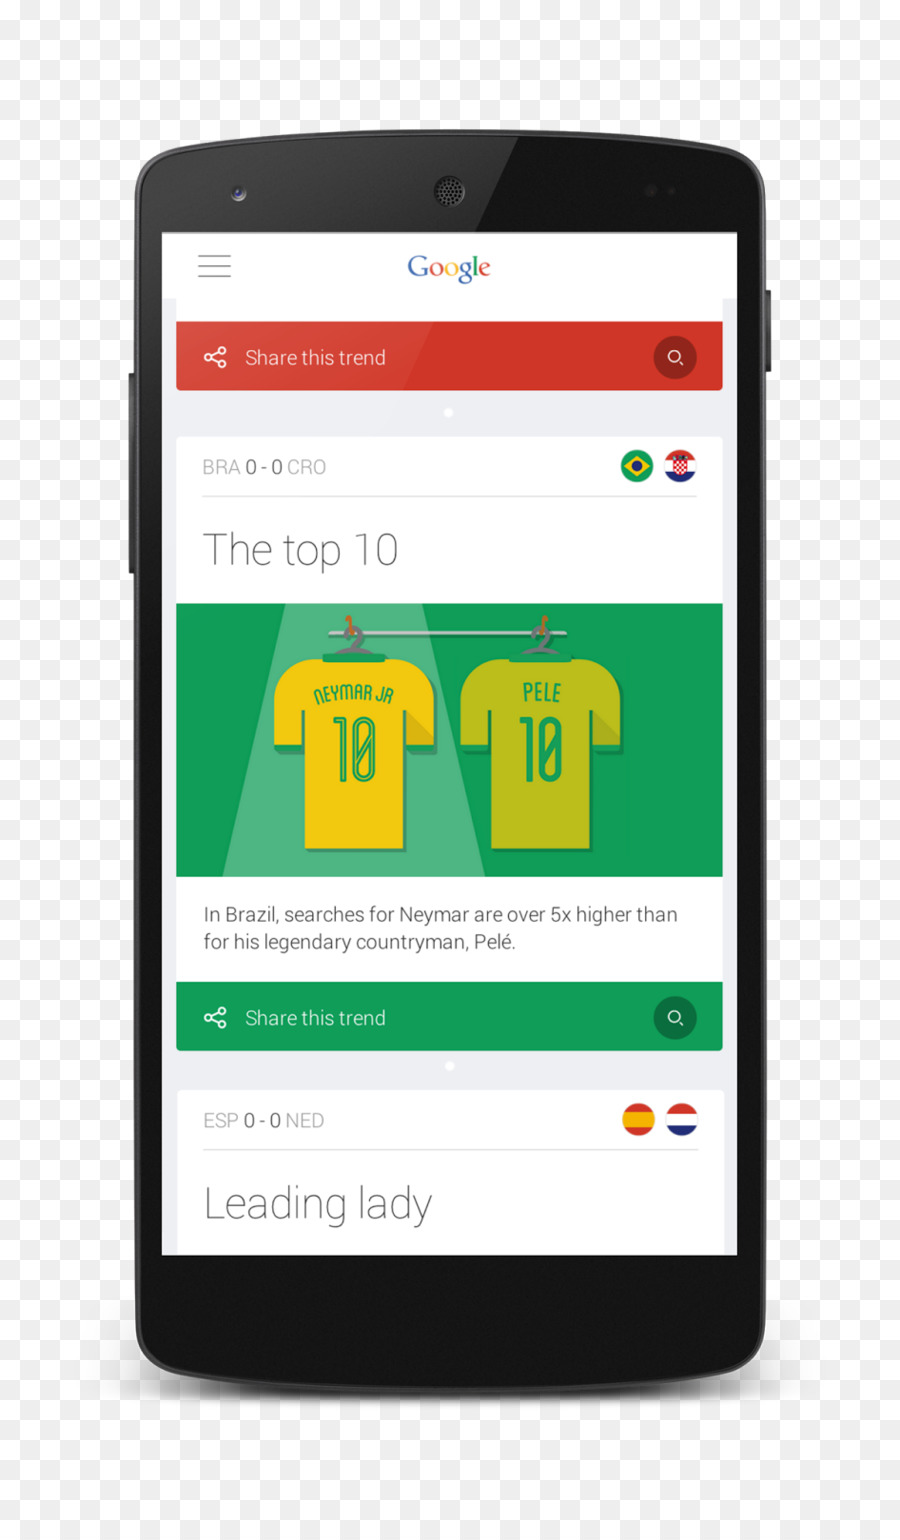 Smartphone Di Coppa Del Mondo Di Ricerca Di Google, Google Now - smartphone